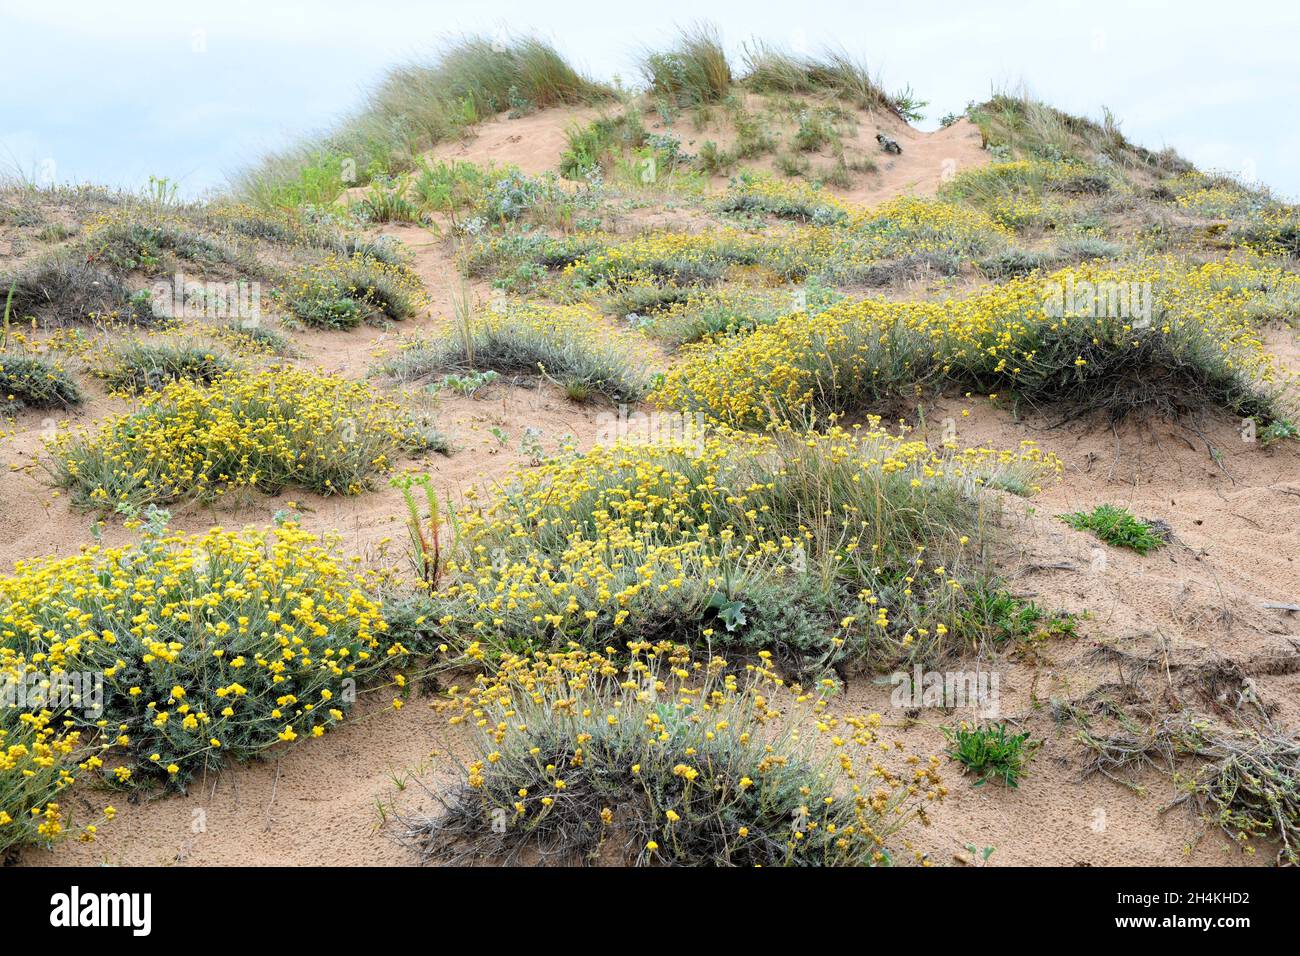 La fleur de paille méditerranéenne (Helichrysum stoechas) est une plante annuelle ou vivace originaire des côtes sablonneuses du bassin méditerranéen.Cette photo a été prise Banque D'Images